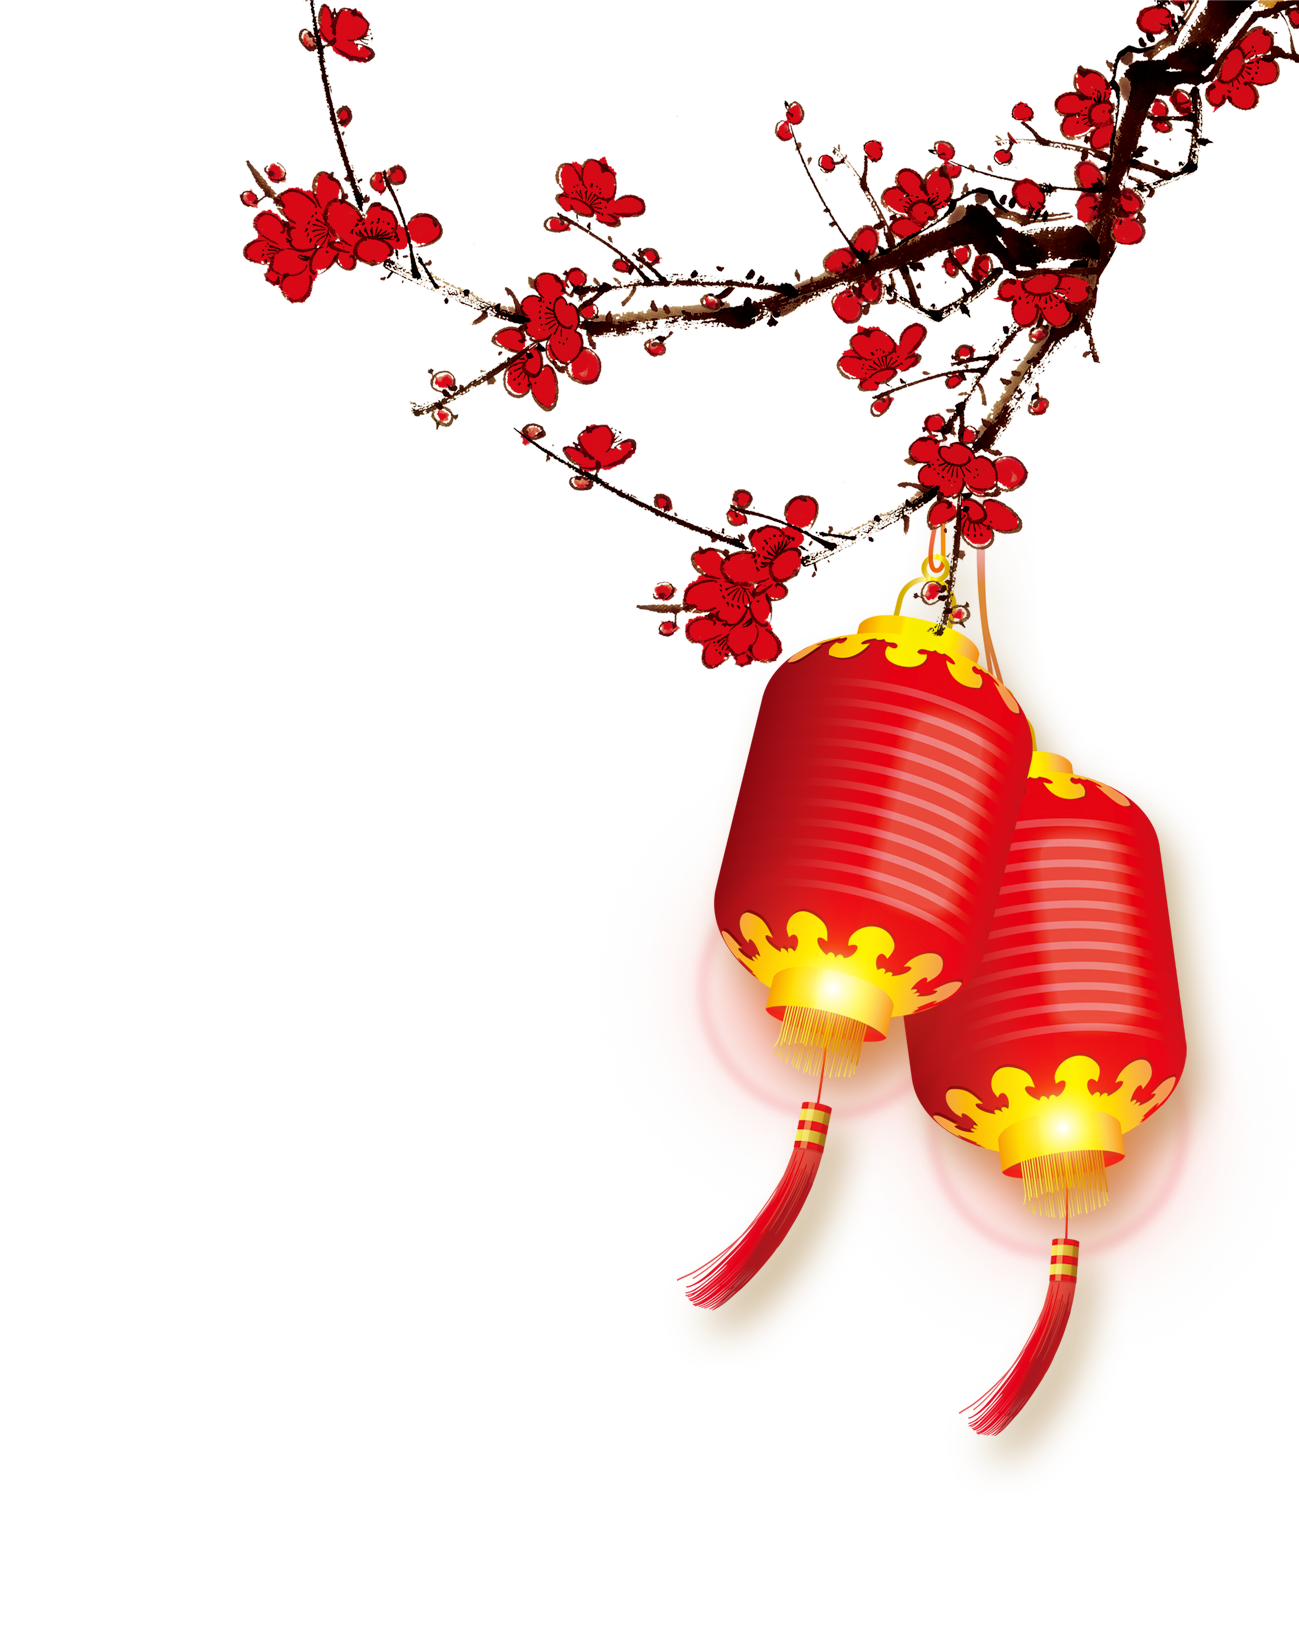 Festival di primavera, capodanno cinese, lanterne, decorazione di sfondo per le vacanze